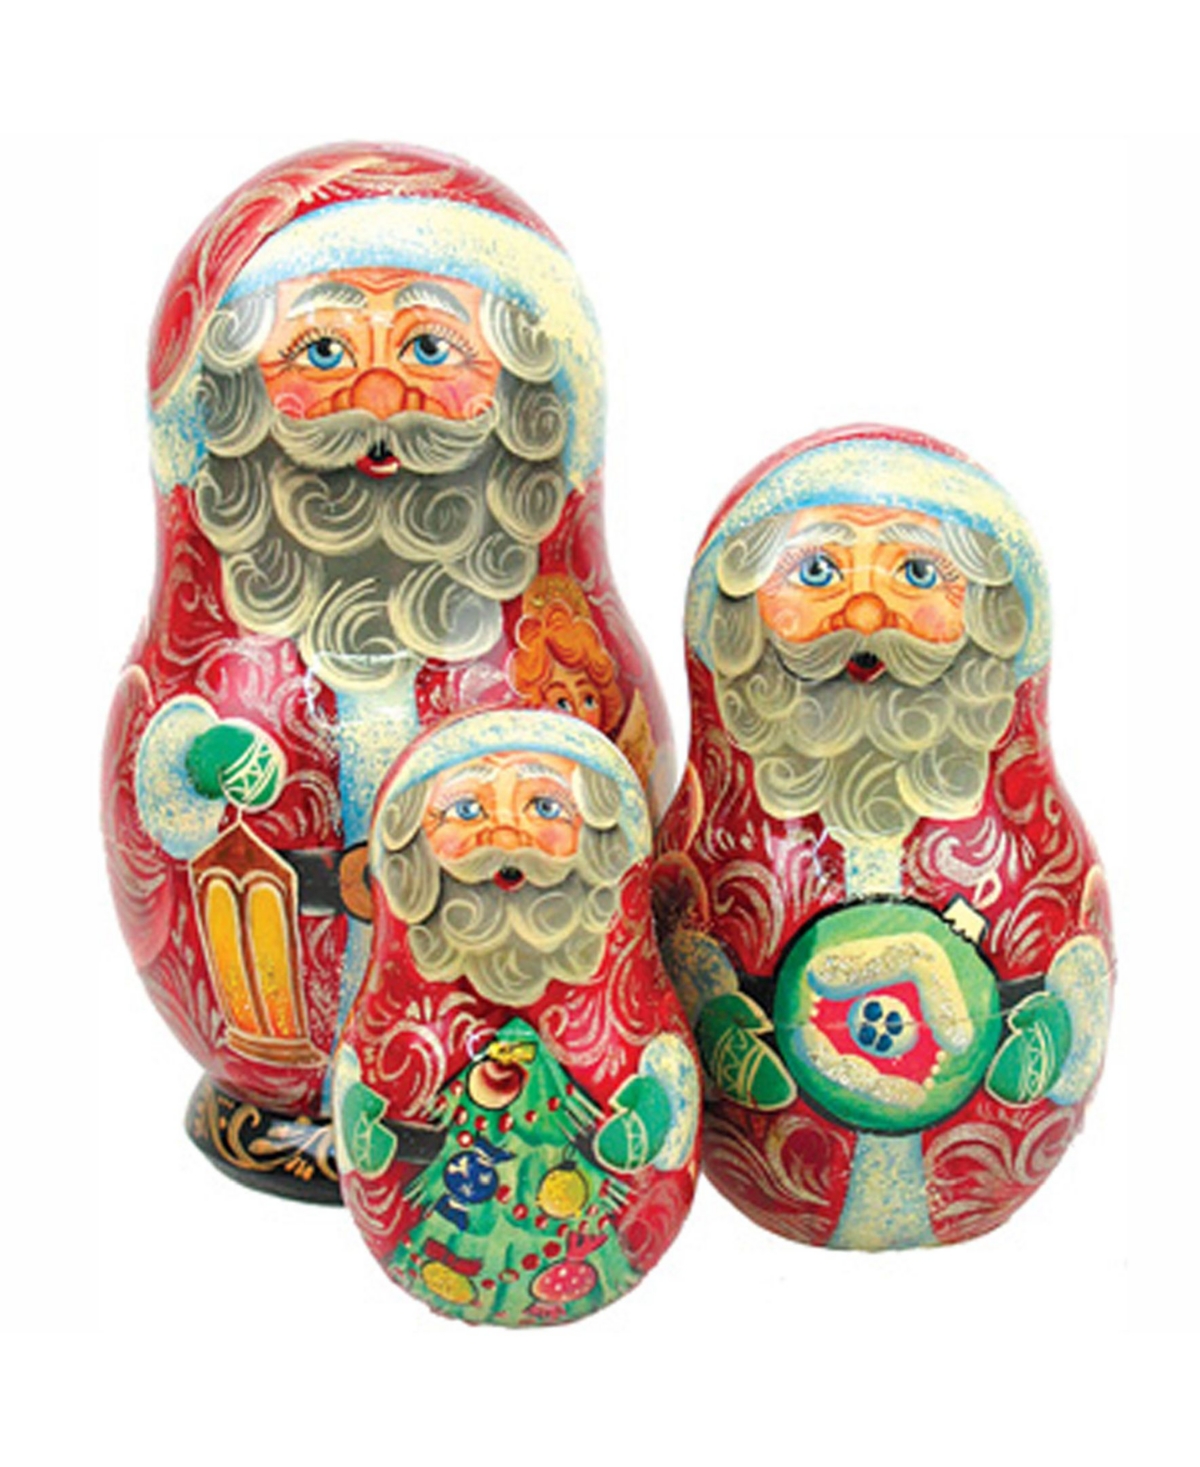 Santa-Lamplighter 3-Piece Russian Matryoshka Nested Dolls Set - Multi